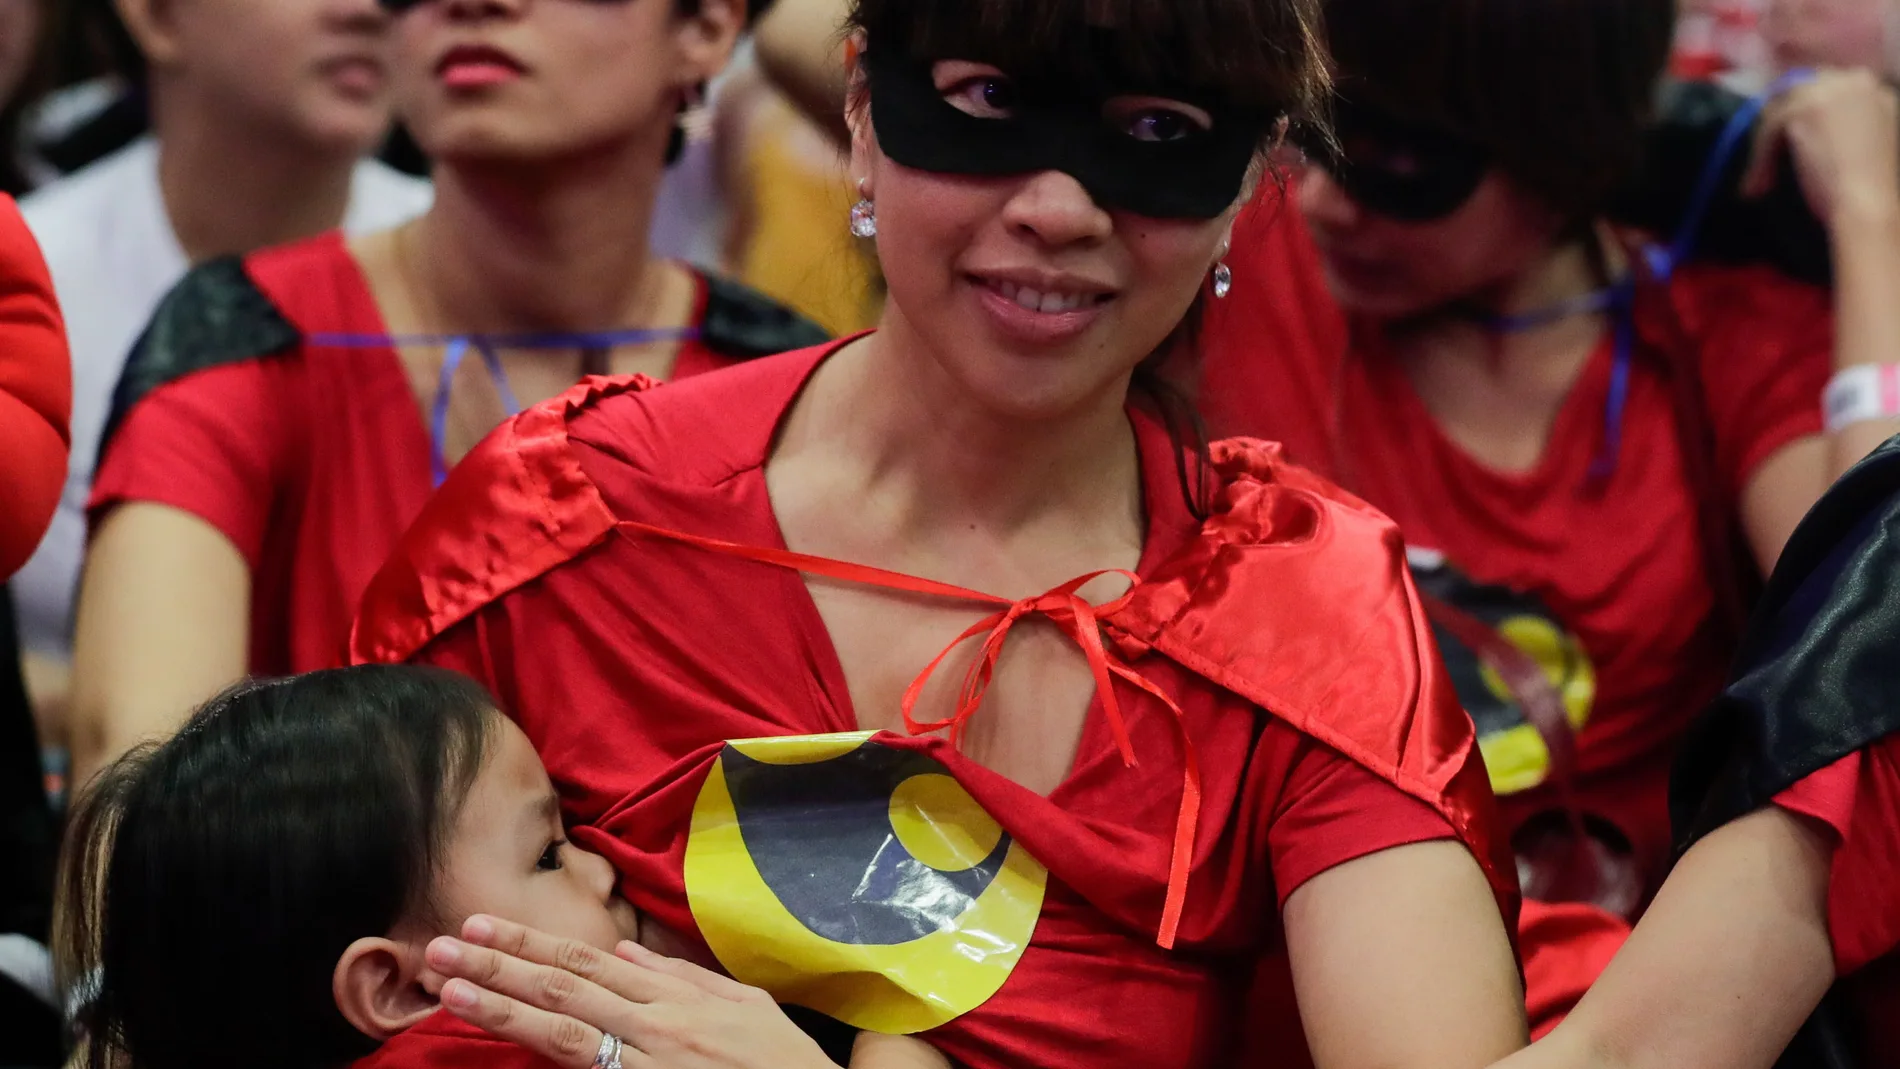 Madre filipina reclama el derecho a dar de mamar en público